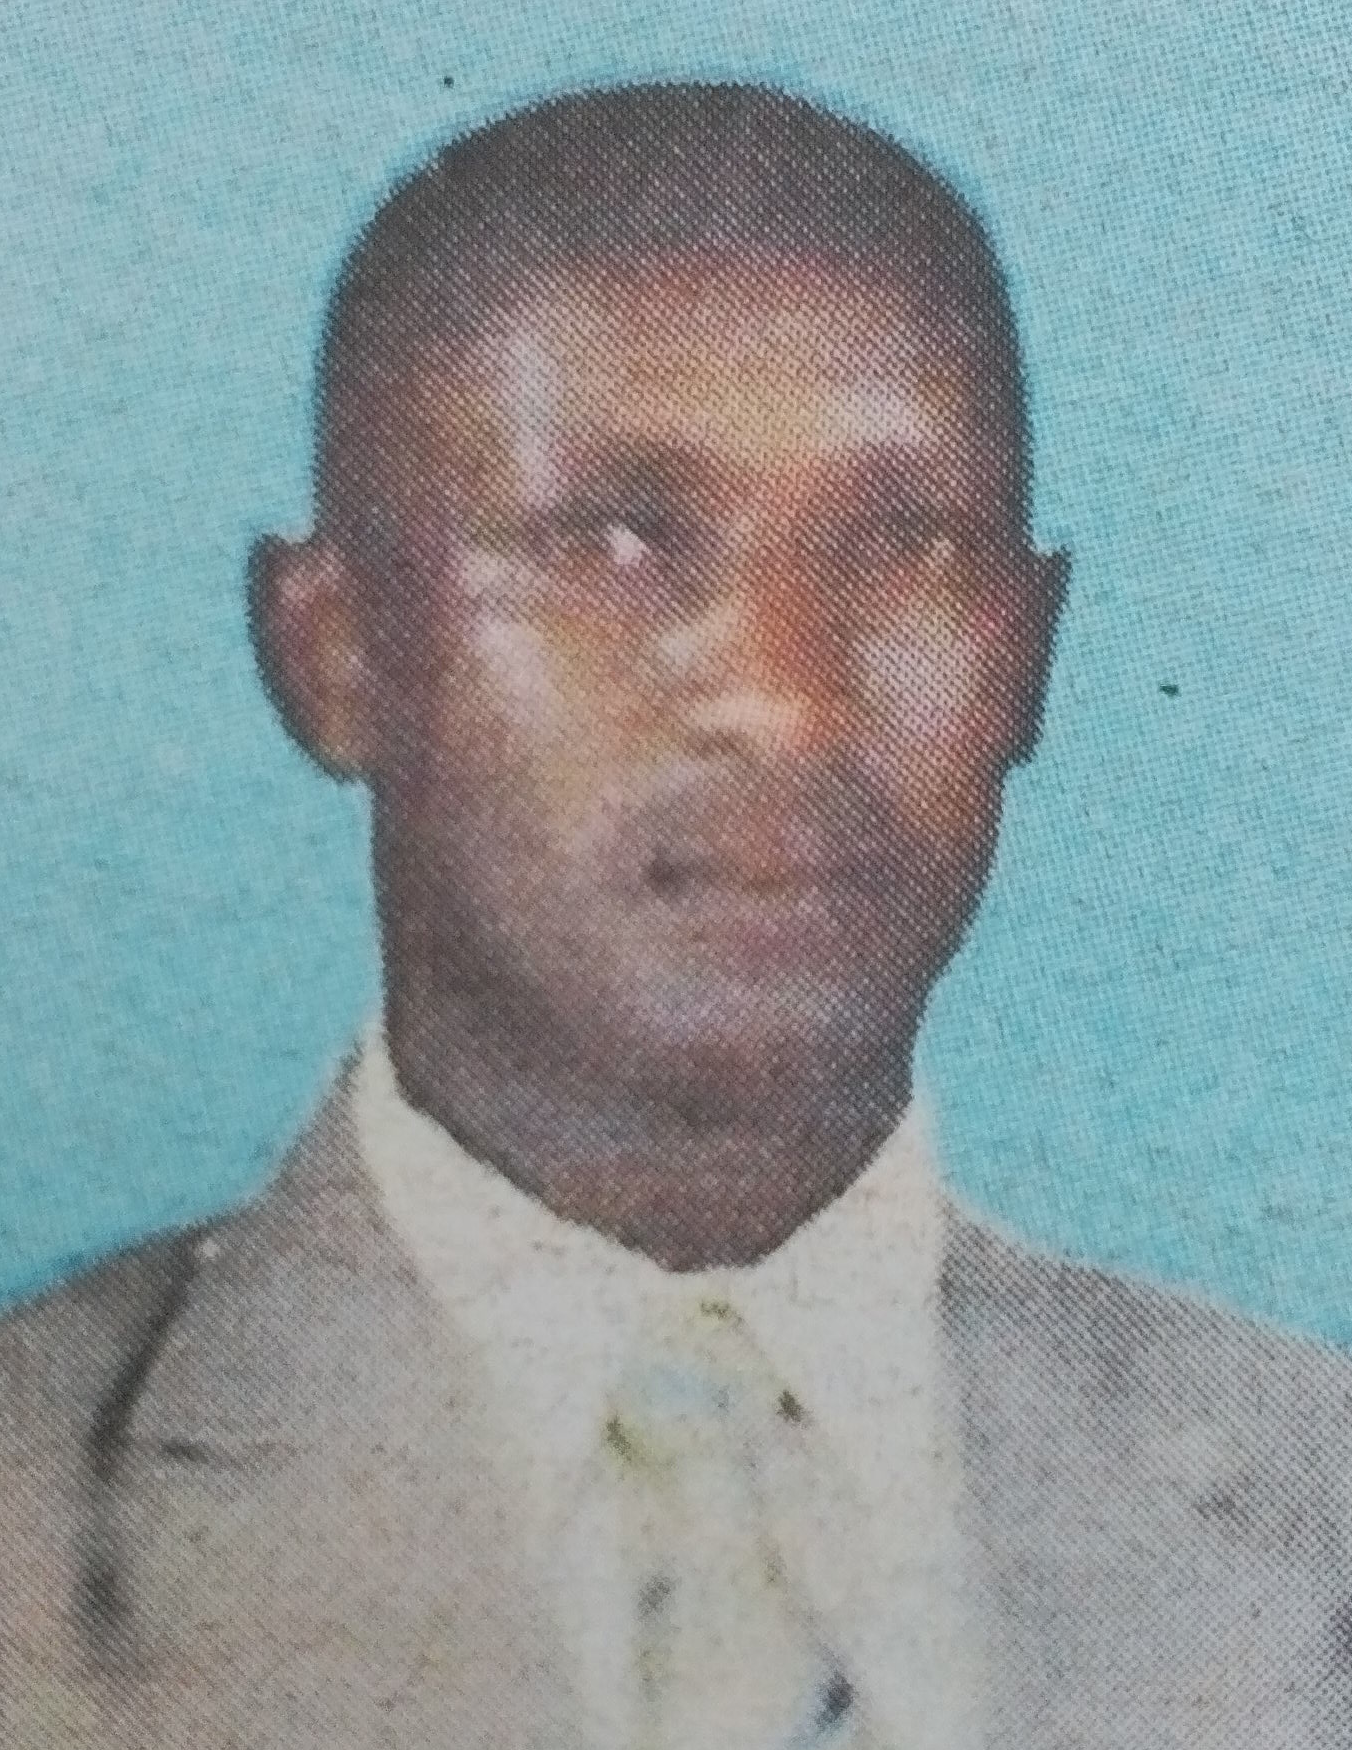 Obituary Image of Girriod Mutwiri Mugambi (Mbui)